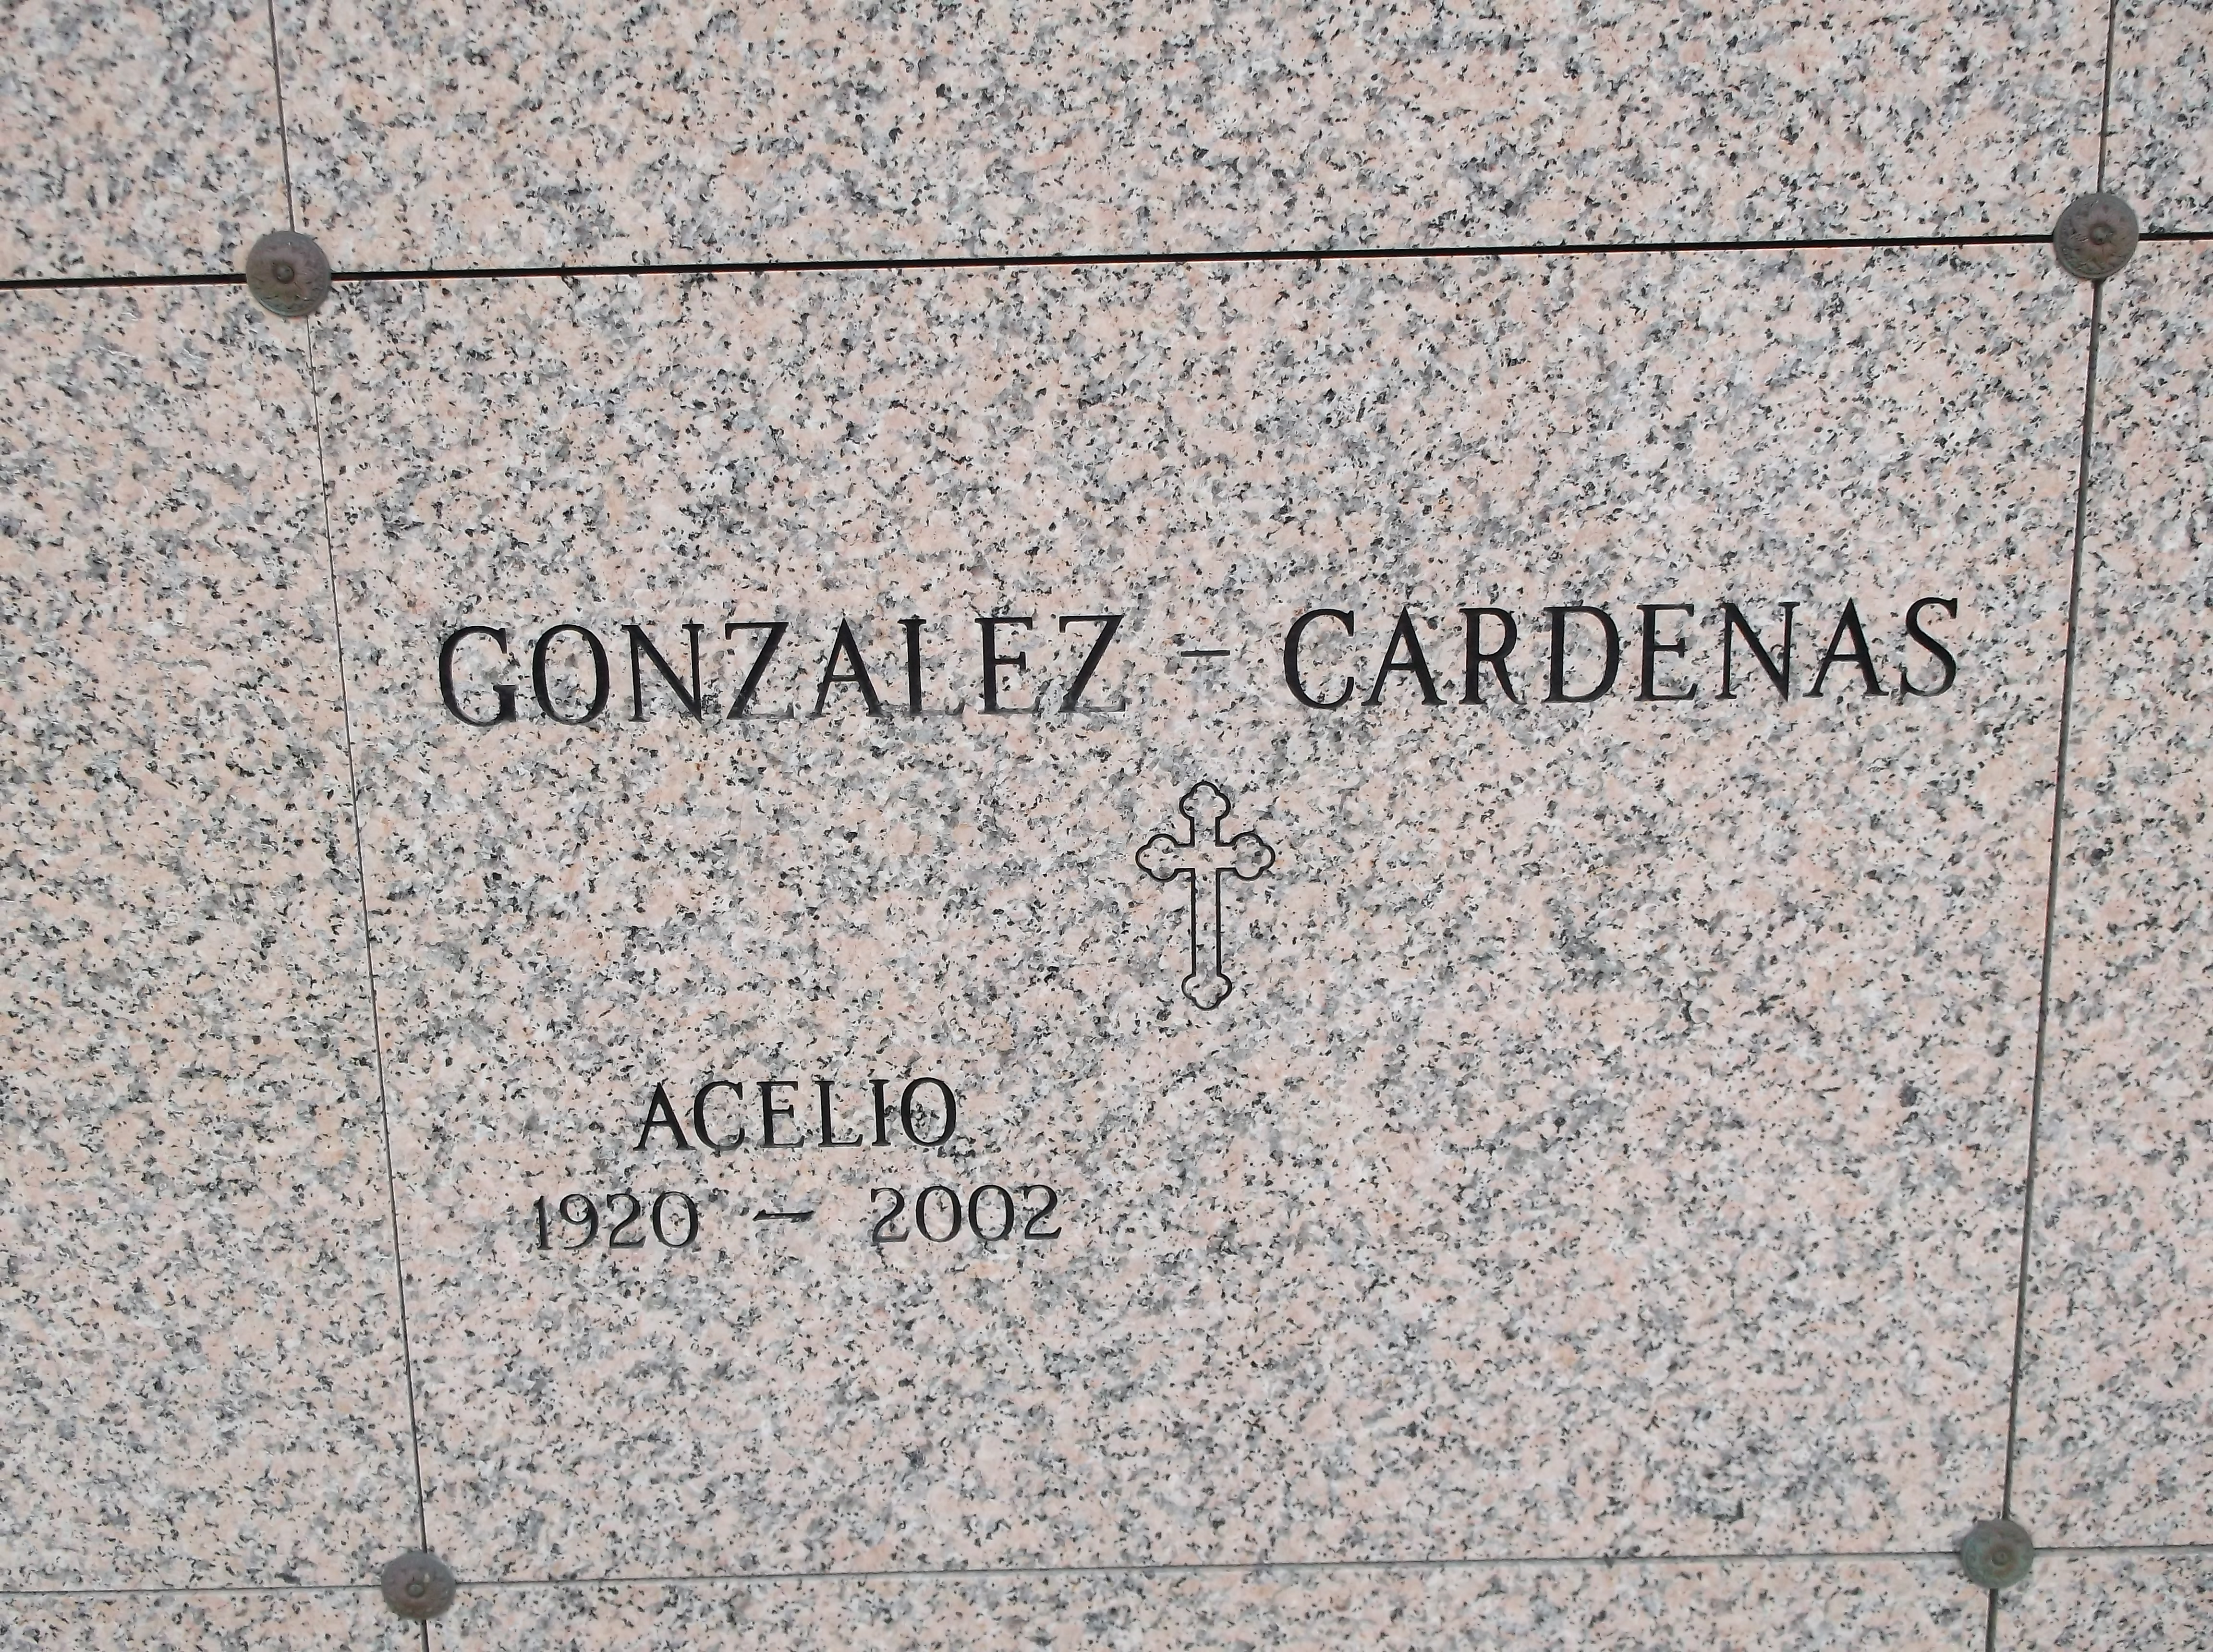 Acelio Gonzalez-Cardenas